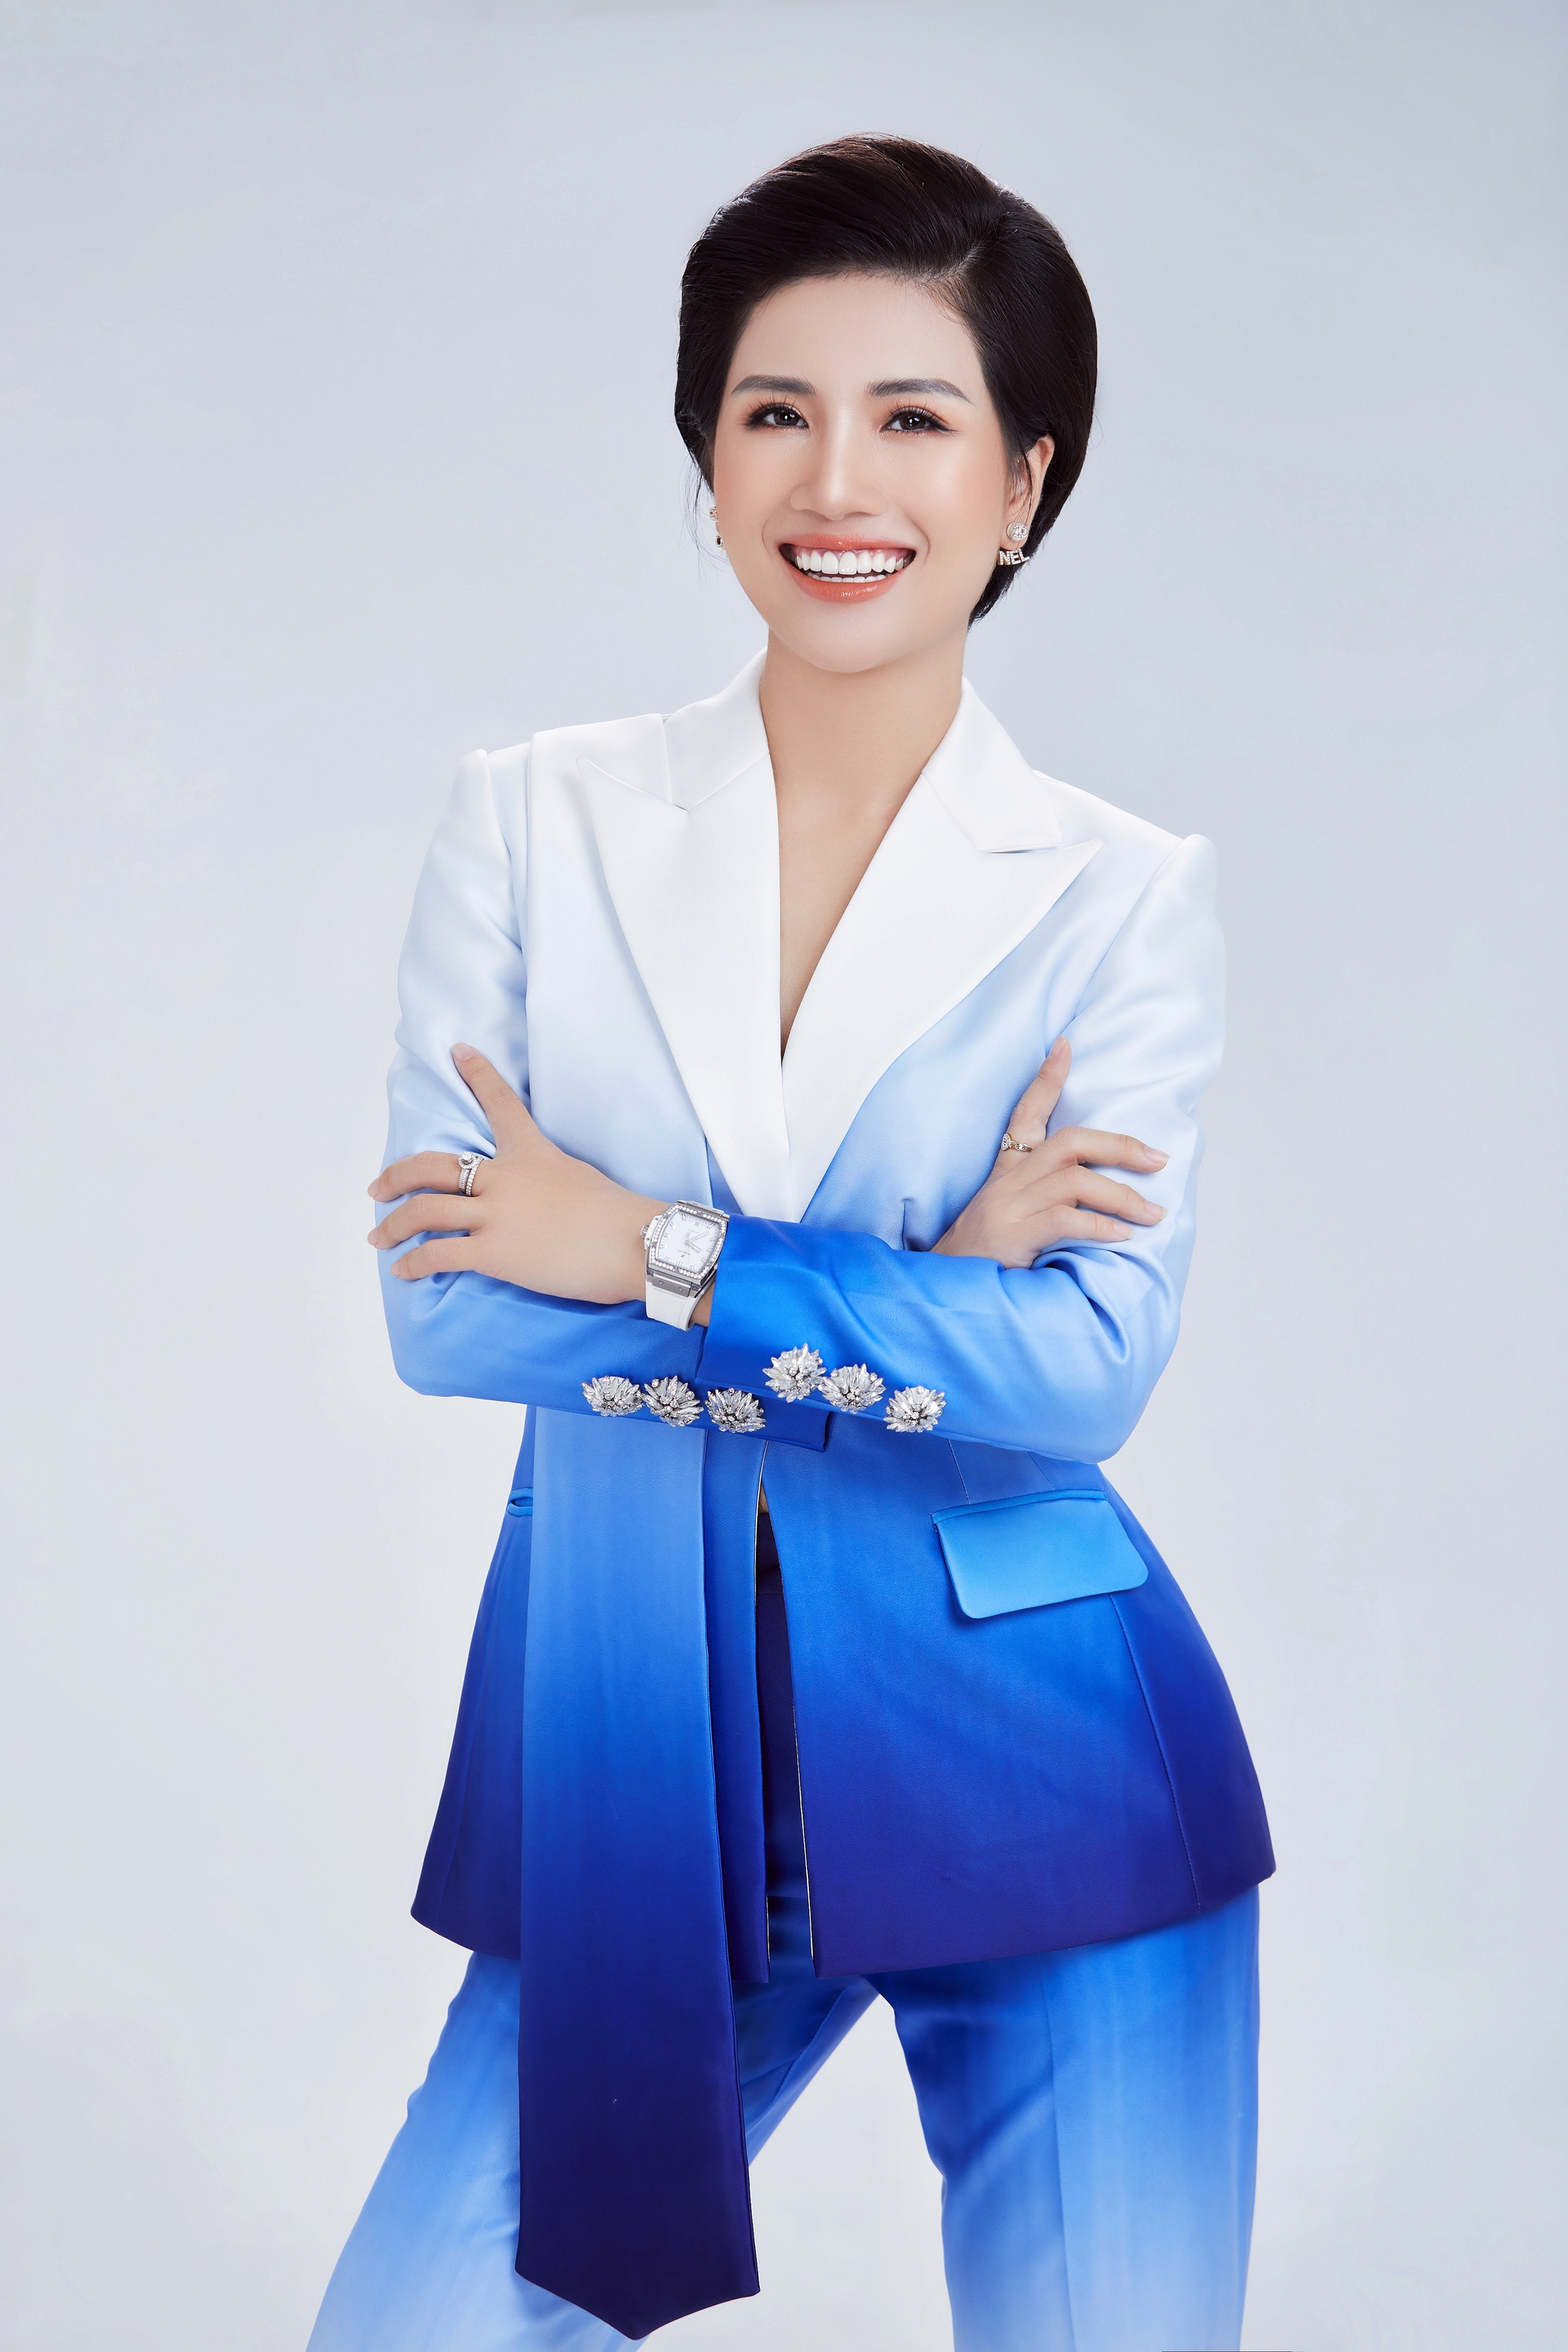 Quỳnh Trang: Quý cô mê diện vest, thích sưu tầm đồng hồ để rèn luyện kỉ luật  - Ảnh 4.